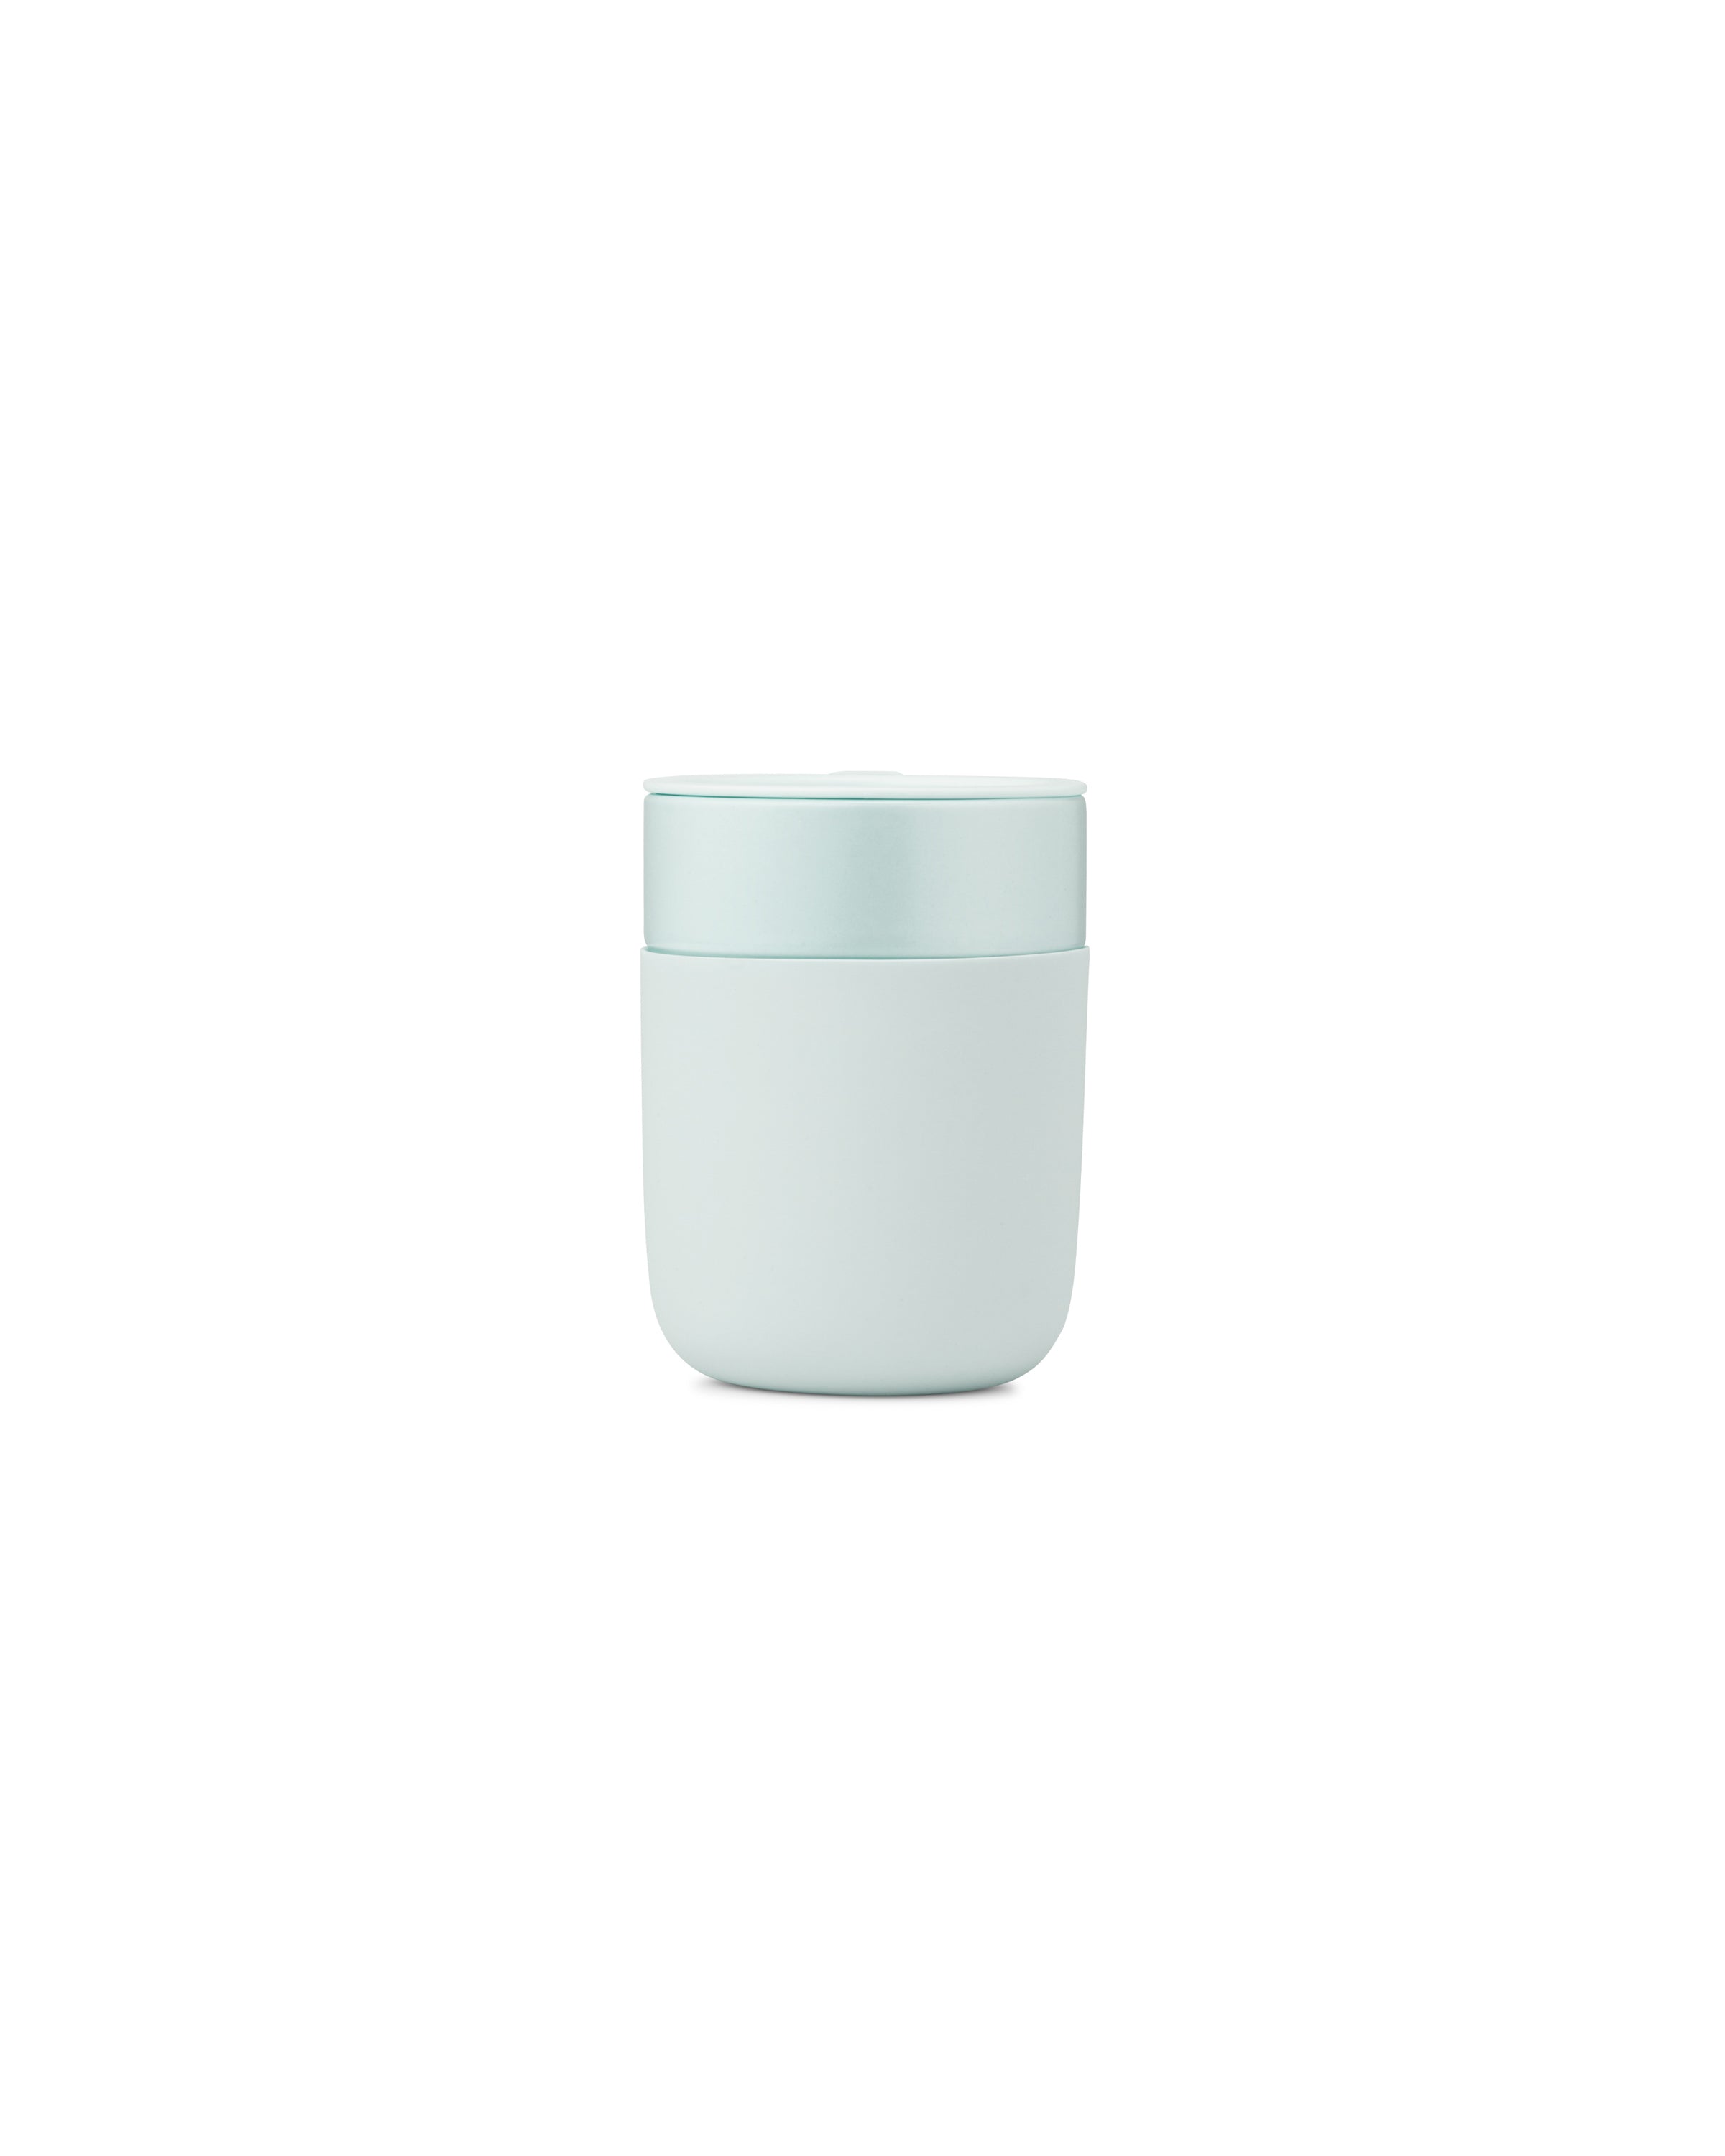 W&P Slate Porter Ceramic Travel Mug - 12oz – Hive Brands